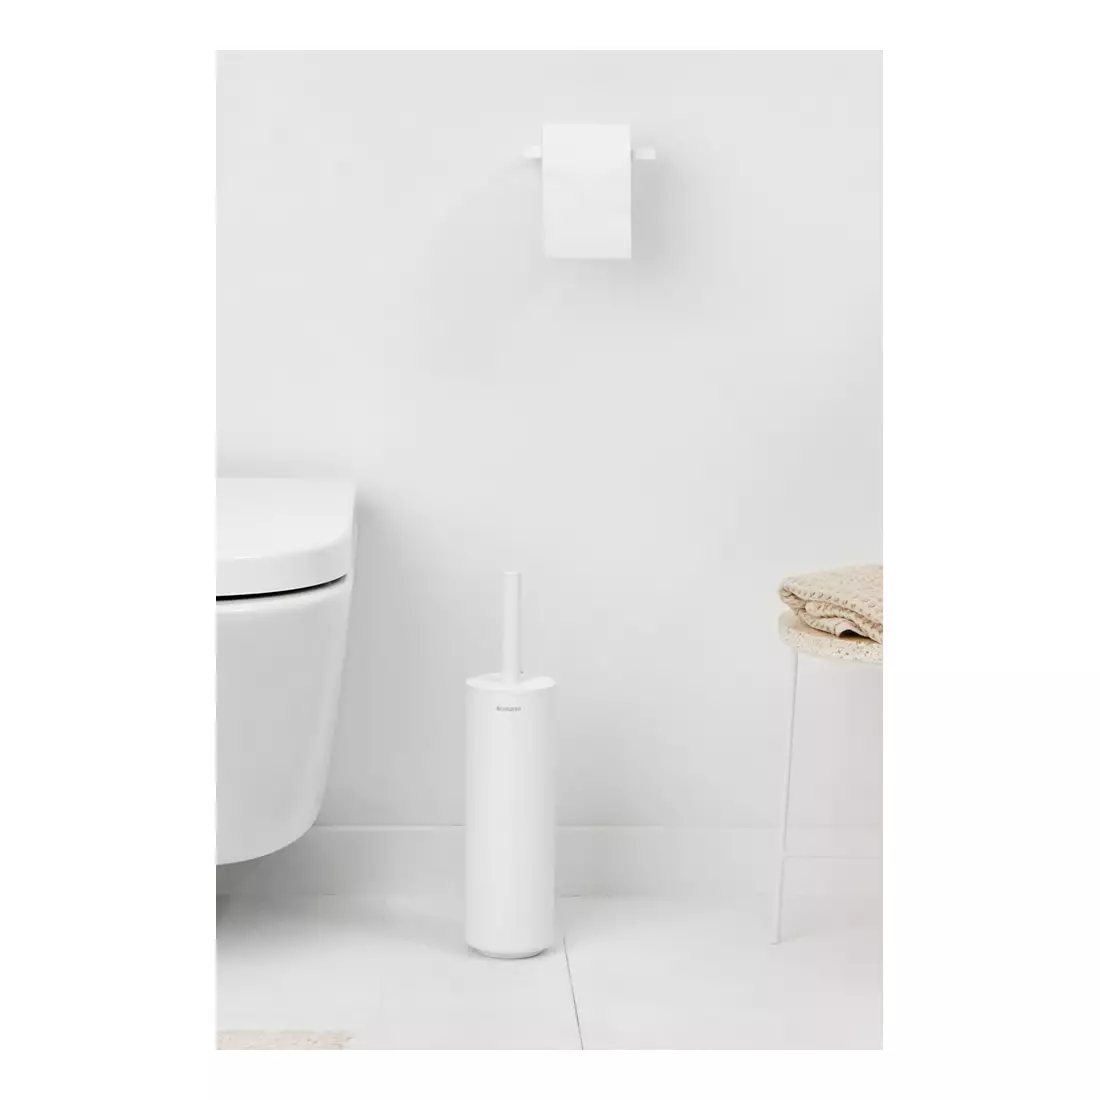 BRABANTIA MINDSET toilet brush in housing, white